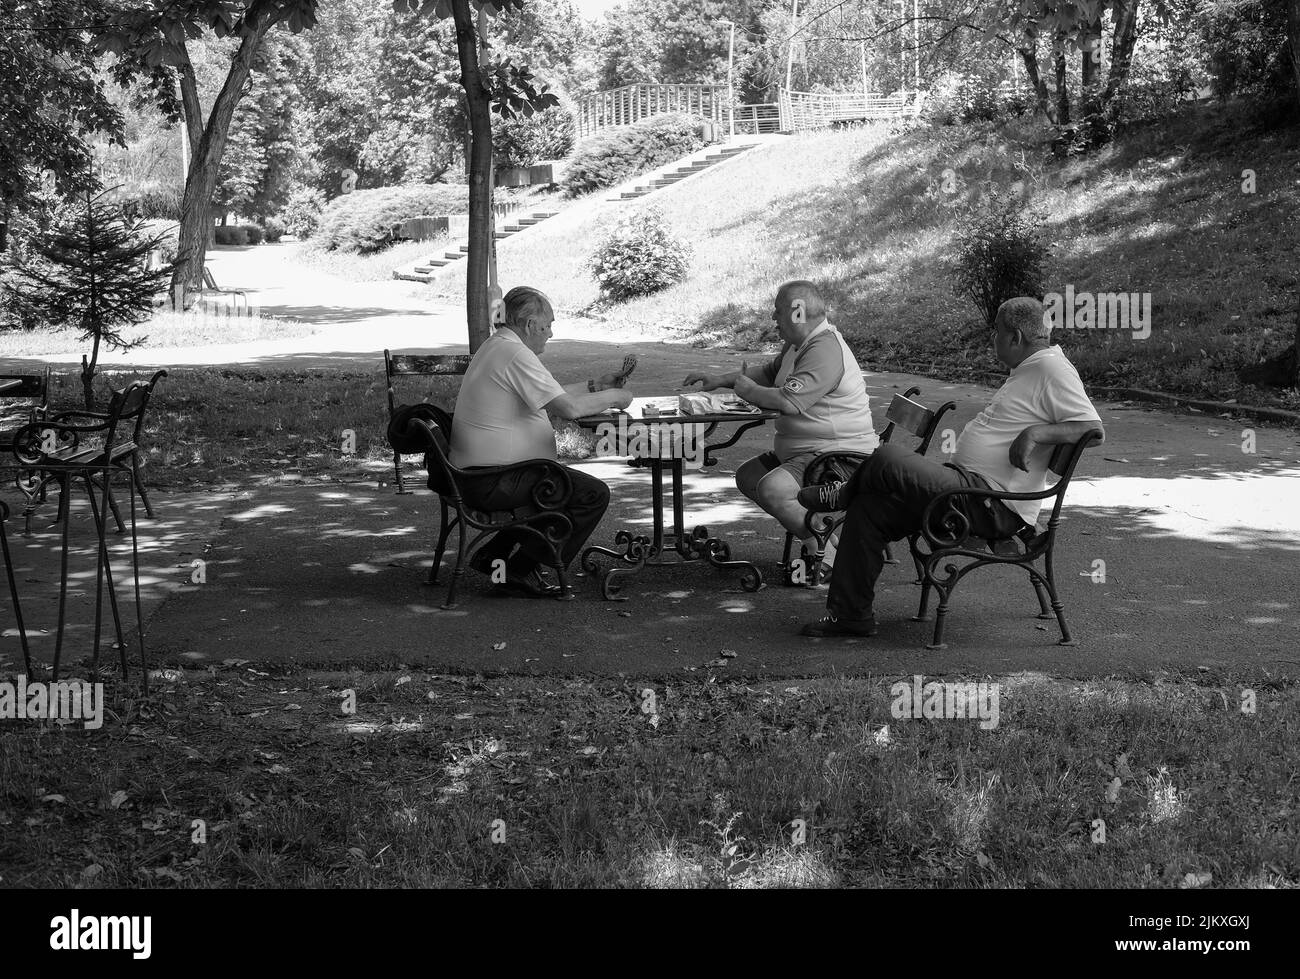 Una fotografía en escala de grises de personas jugando ajedrez en el parque Mihai Eminescu en Arad, Rumania Foto de stock